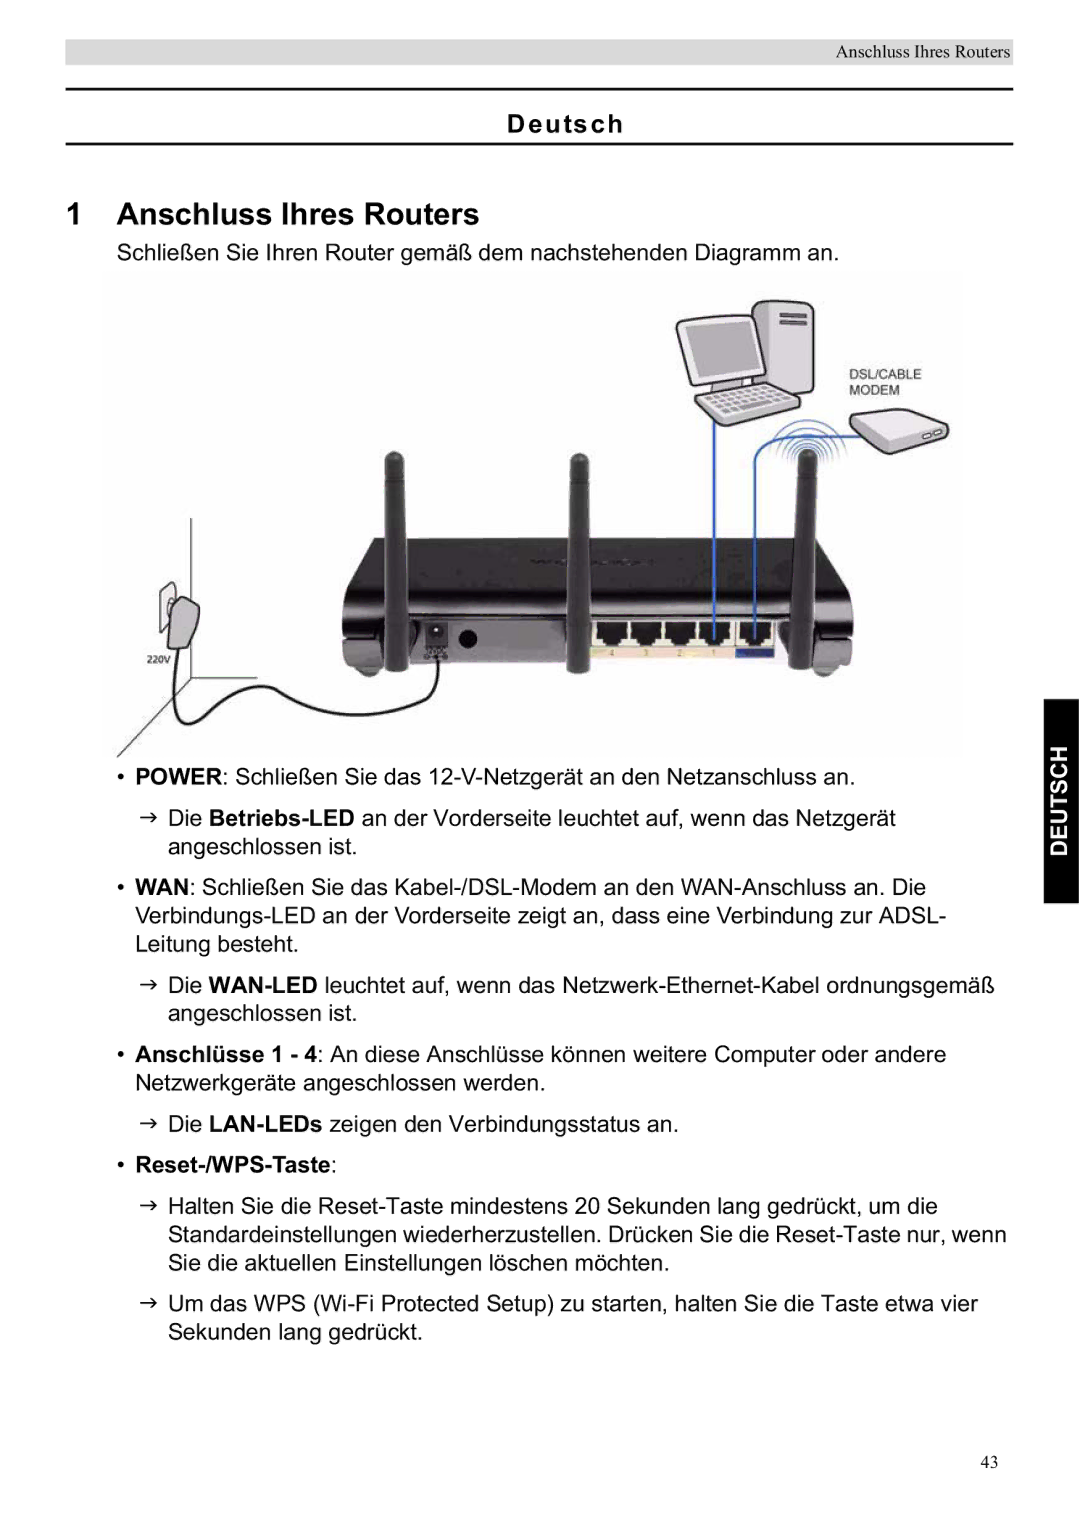 Topcom WBR 7201 N manual Anschluss Ihres Routers, Deutsch, Reset-/WPS-Taste 